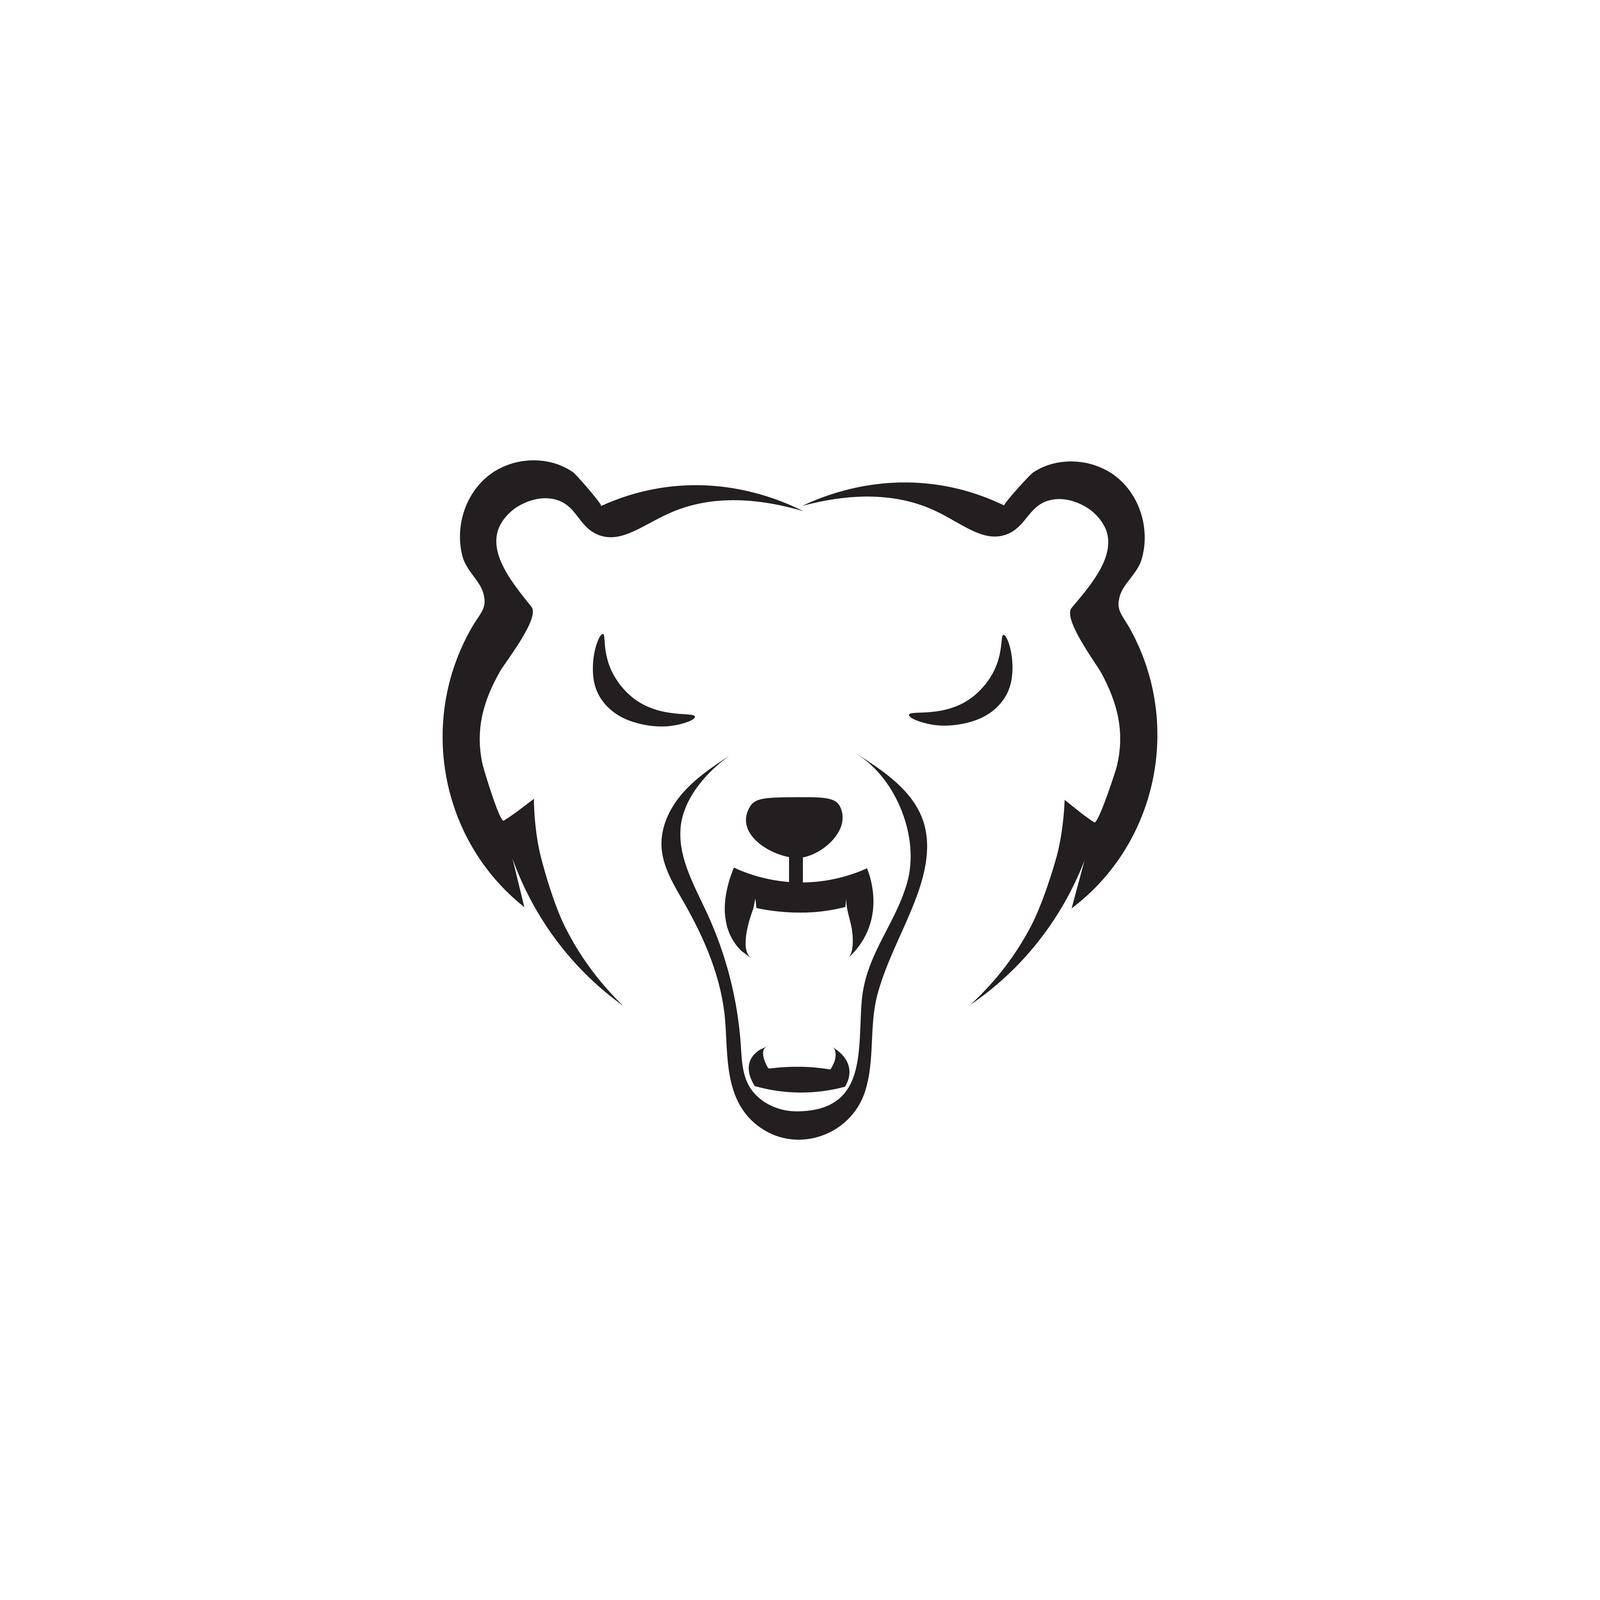 Bear icon logo free vector design